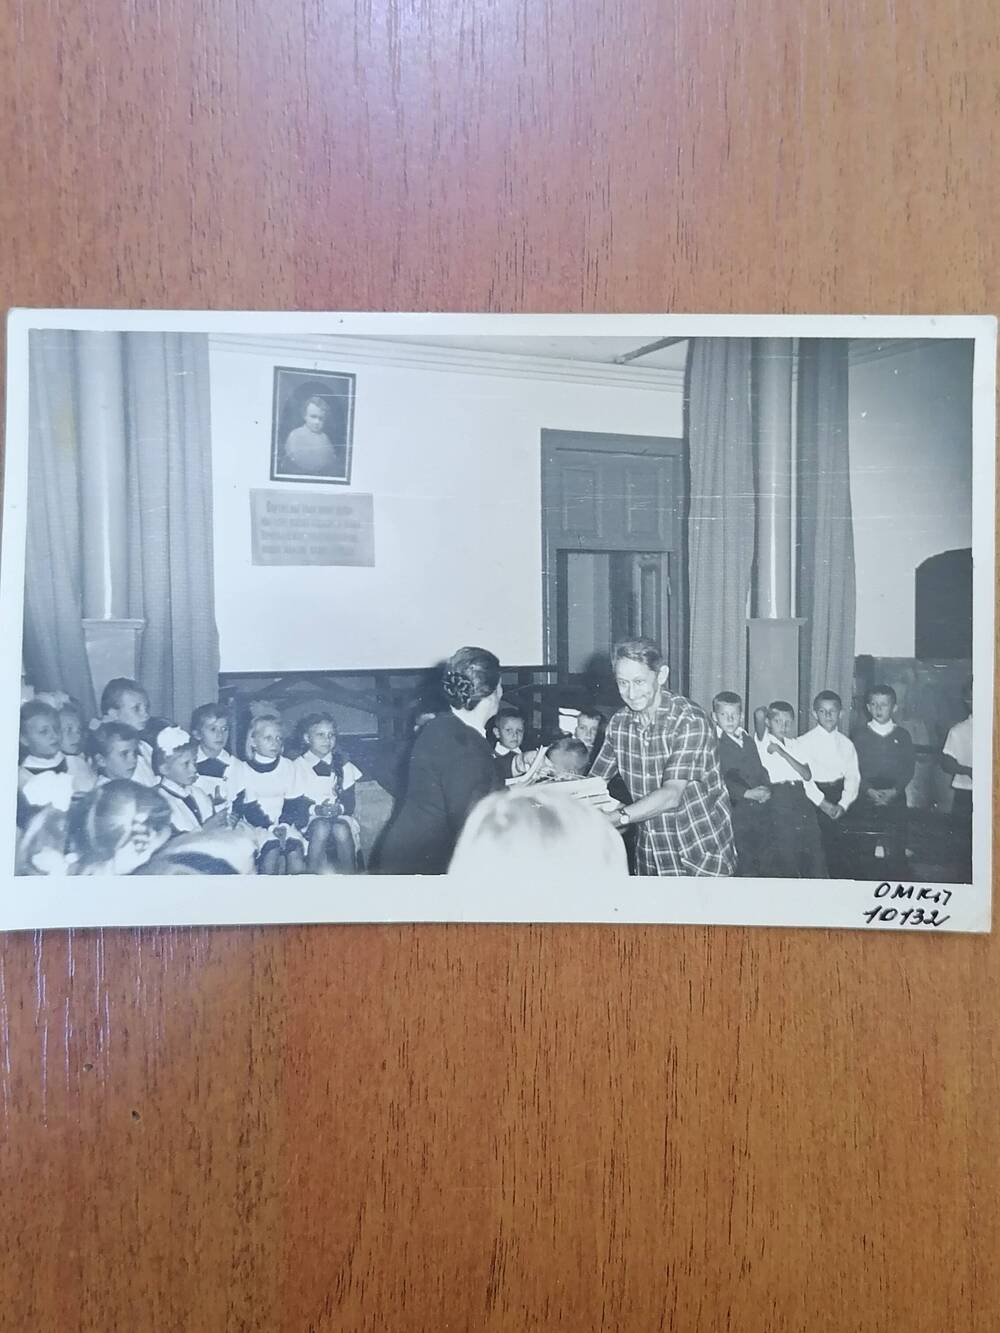 Фото черно-белое,глянцевое. сюжетное, Караулов Ф.К. председатель райкома союза работников торговли